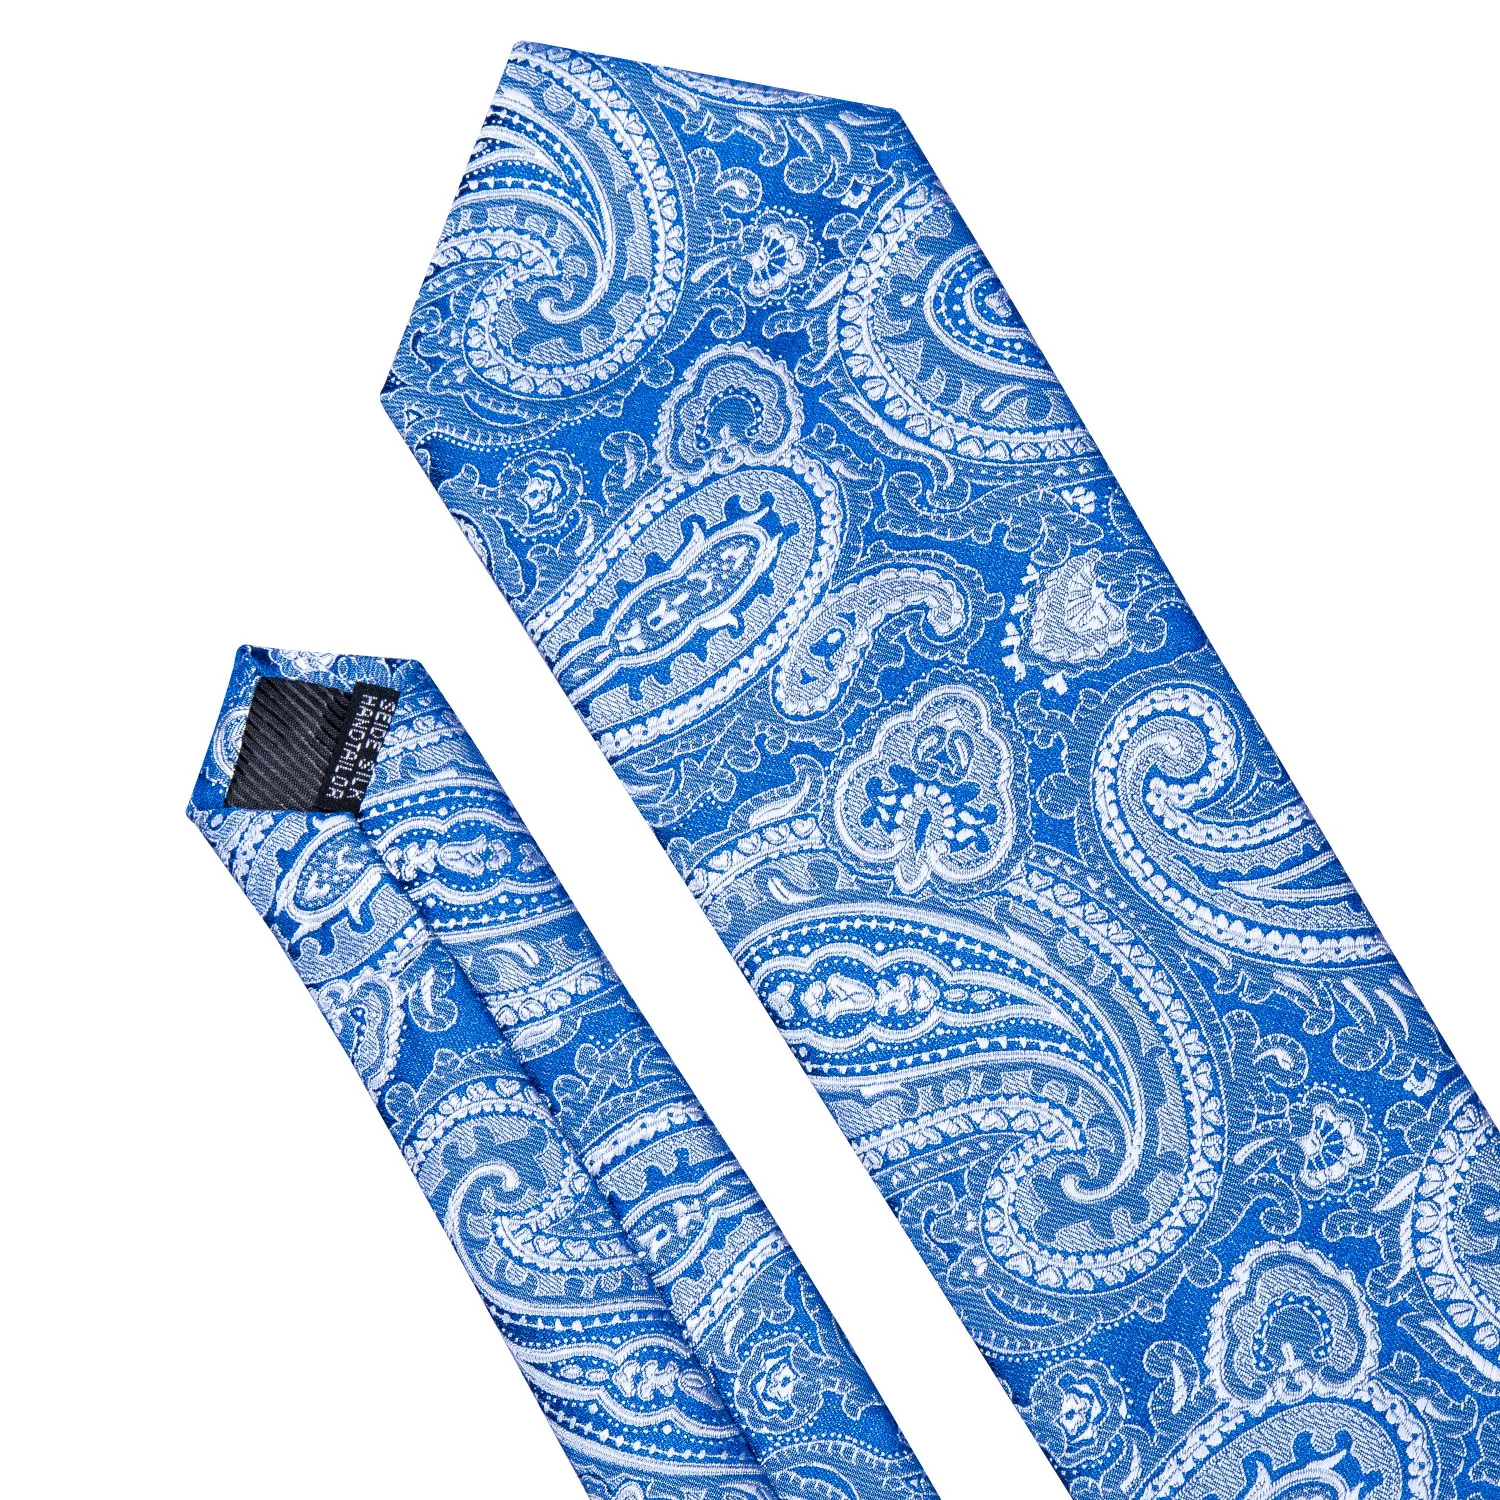 Барри. Ван Темно-синие мужские галстуки Gift Box Set Пейсли Цветочные моды шелковые галстуки Gravata Свадебная вечеринка платок LS-5147